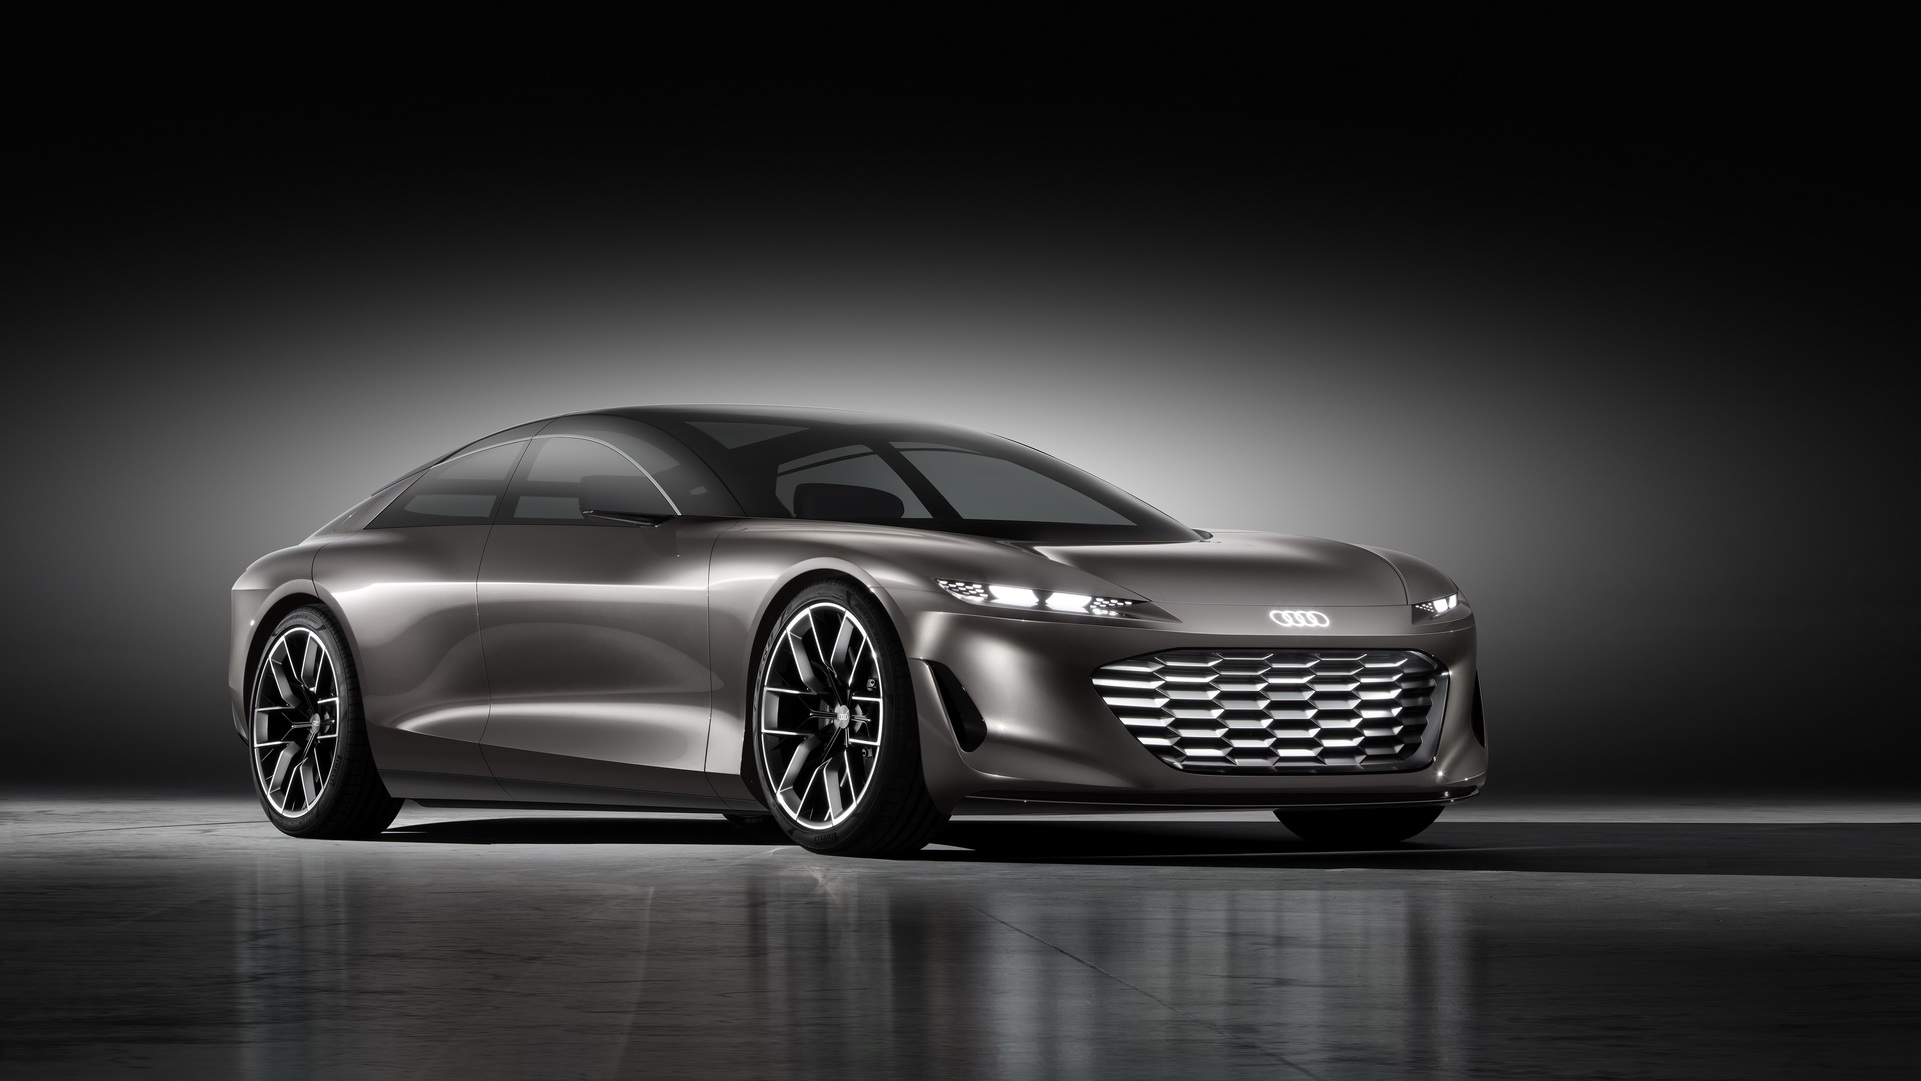 Prove di nuova ammiraglia: Audi presenta il concept Grandsphere